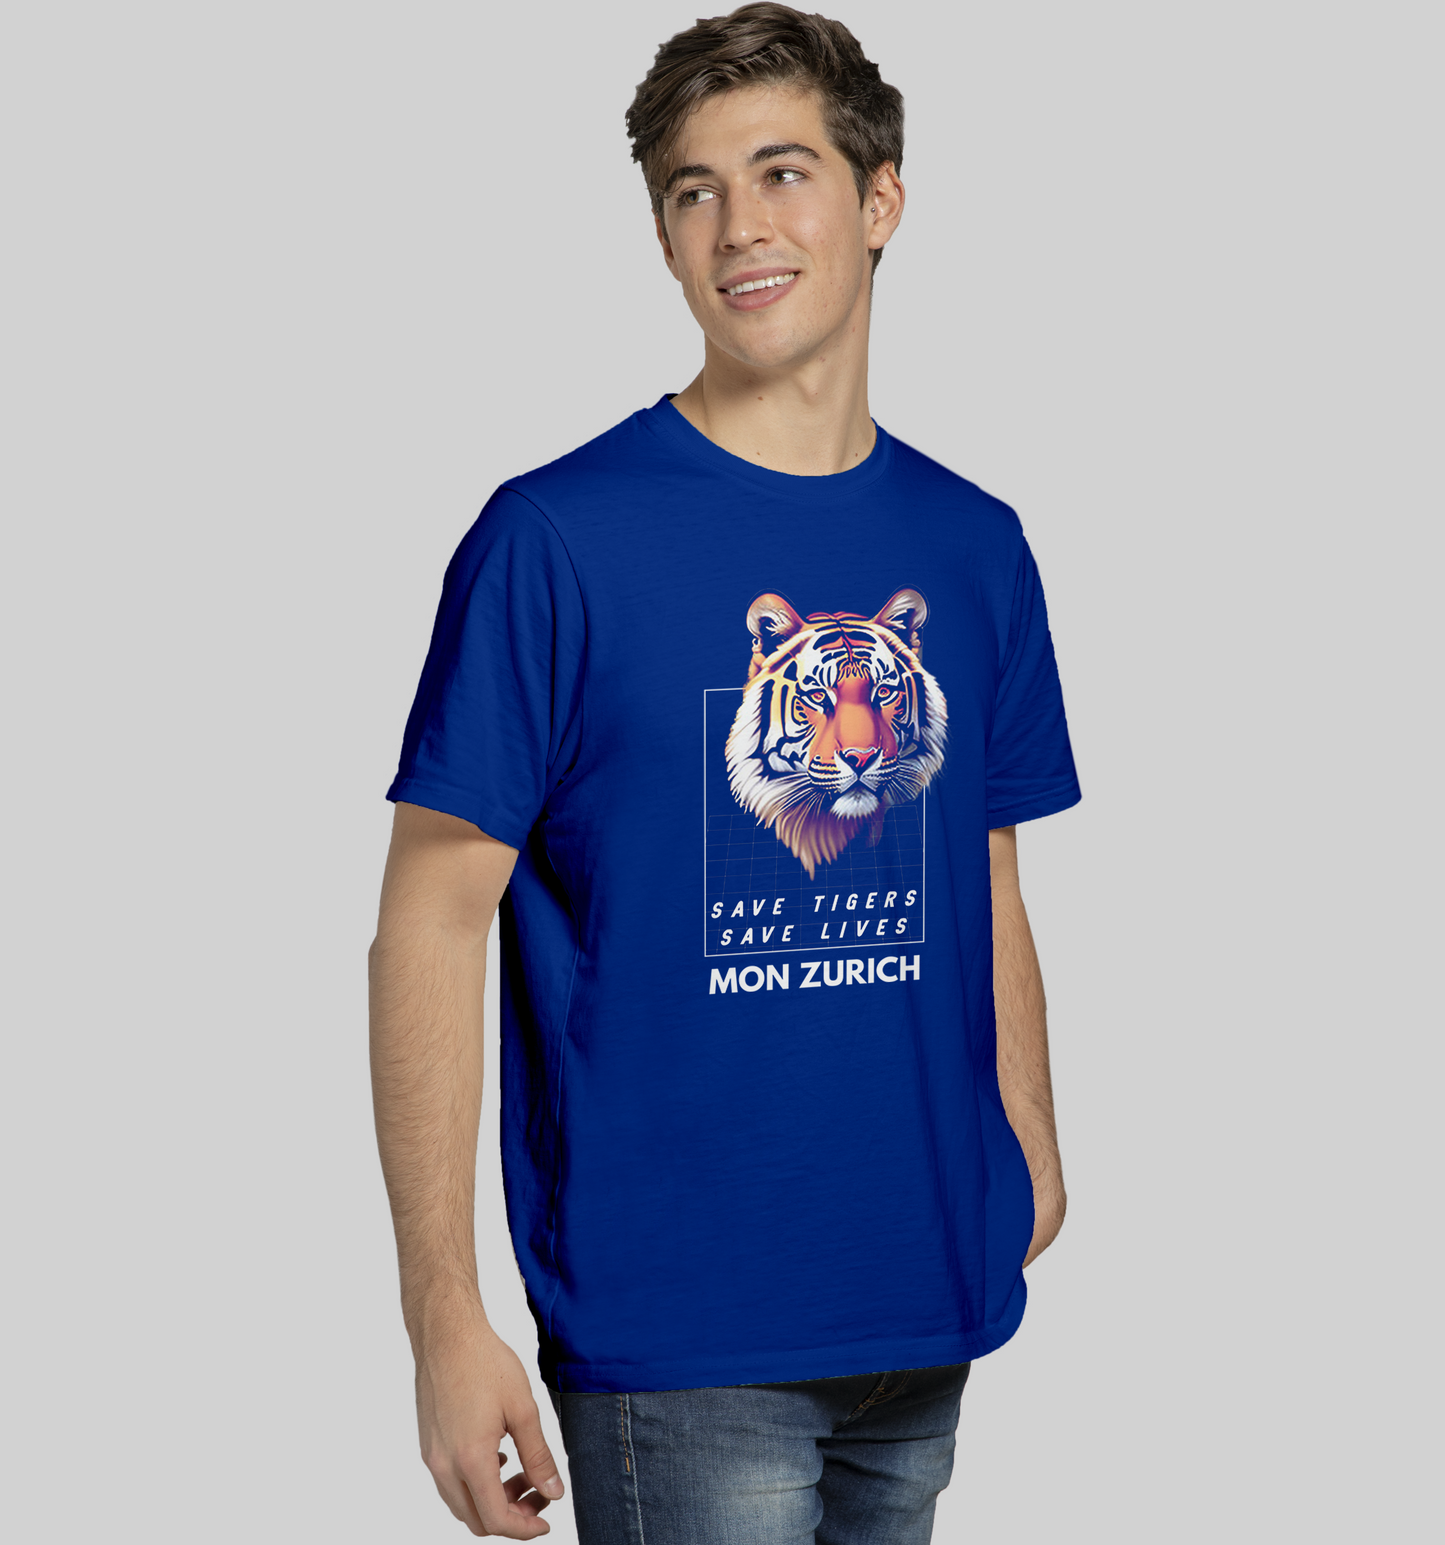 Save Tigers, Save Lives T-shirt in Dark - Mon Zurich Originals